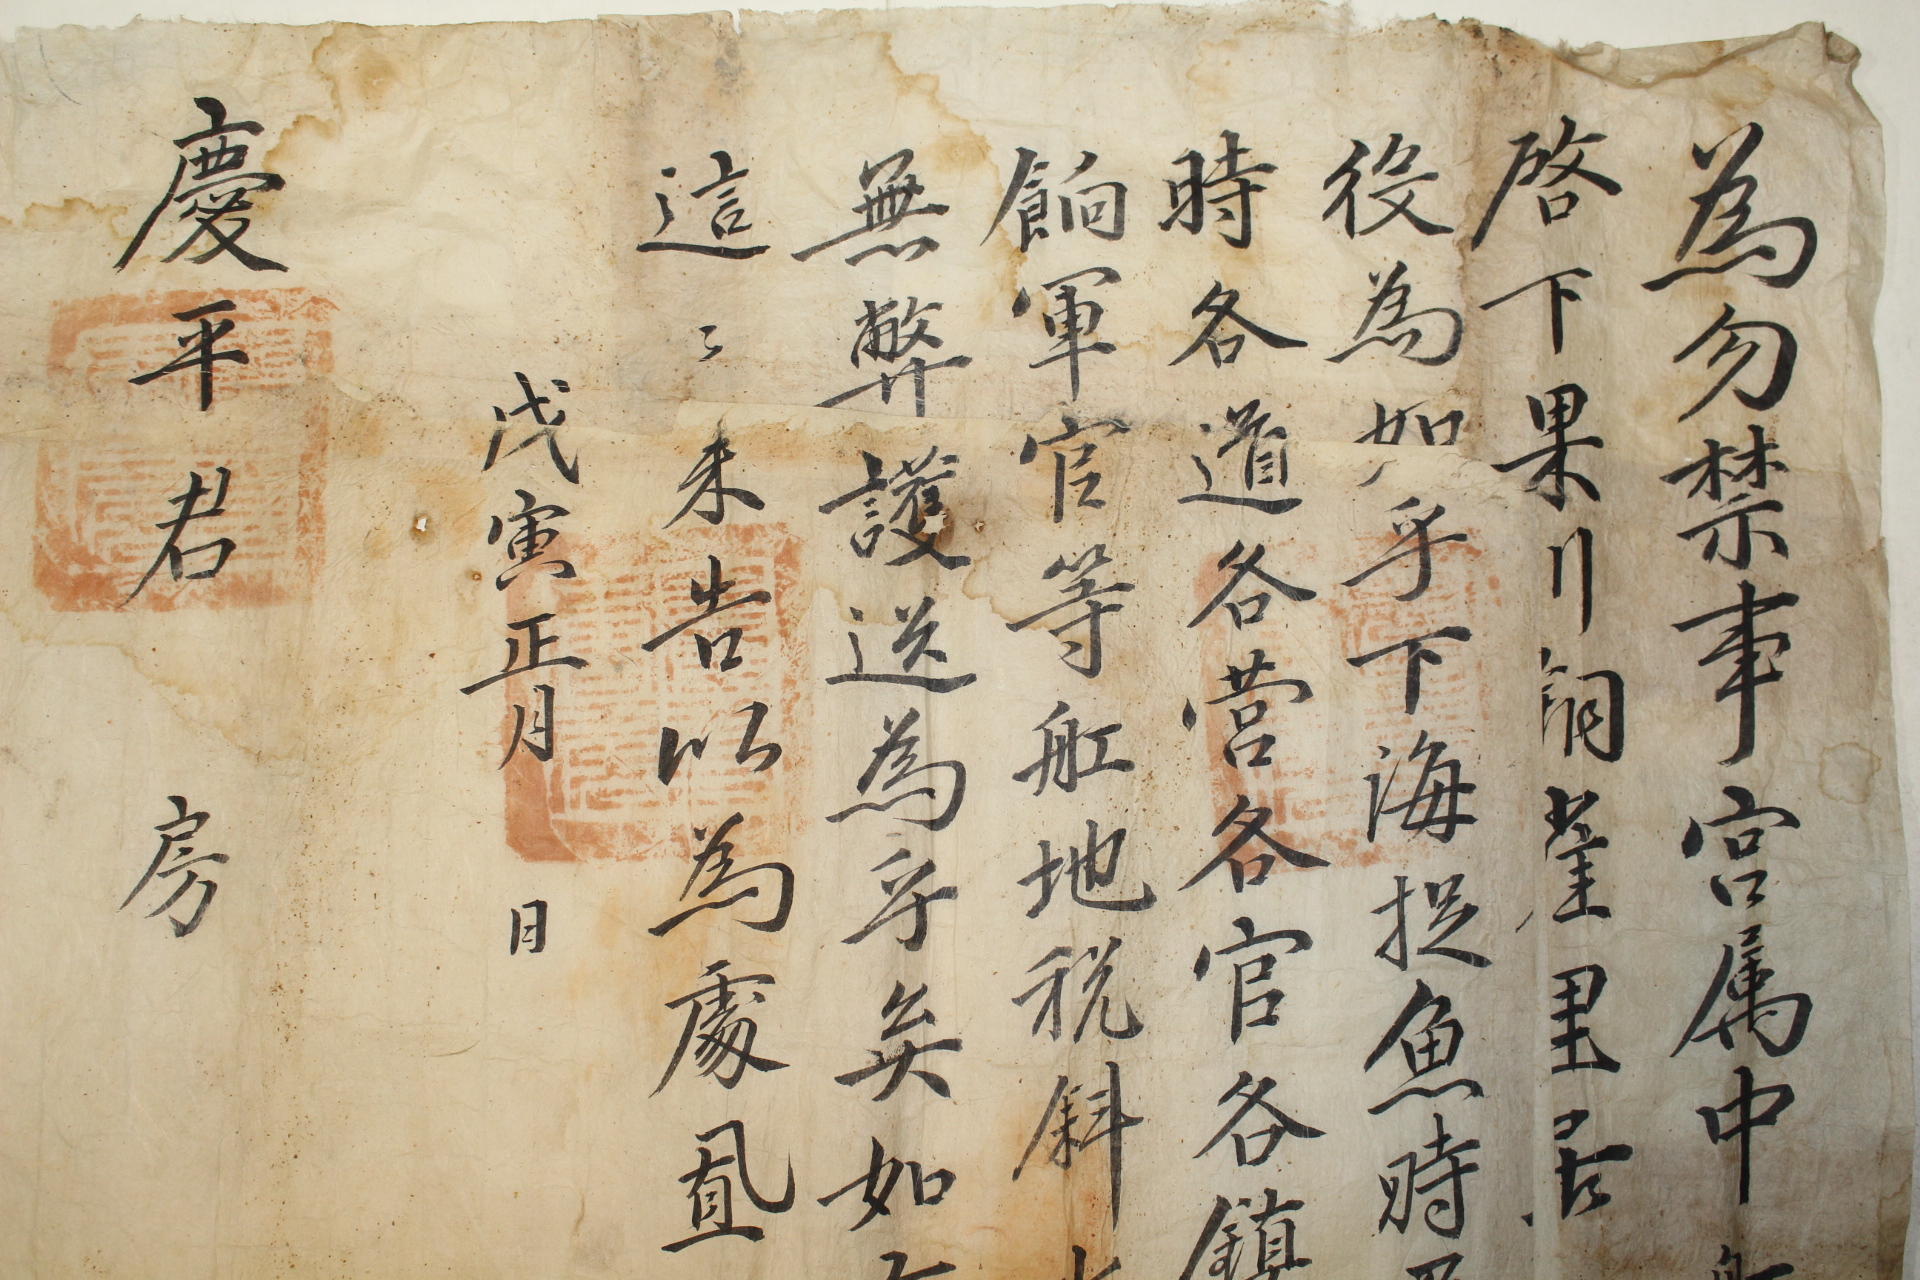 조선시대 경평군(慶平君)문서외 수군관련문서 18장 일괄